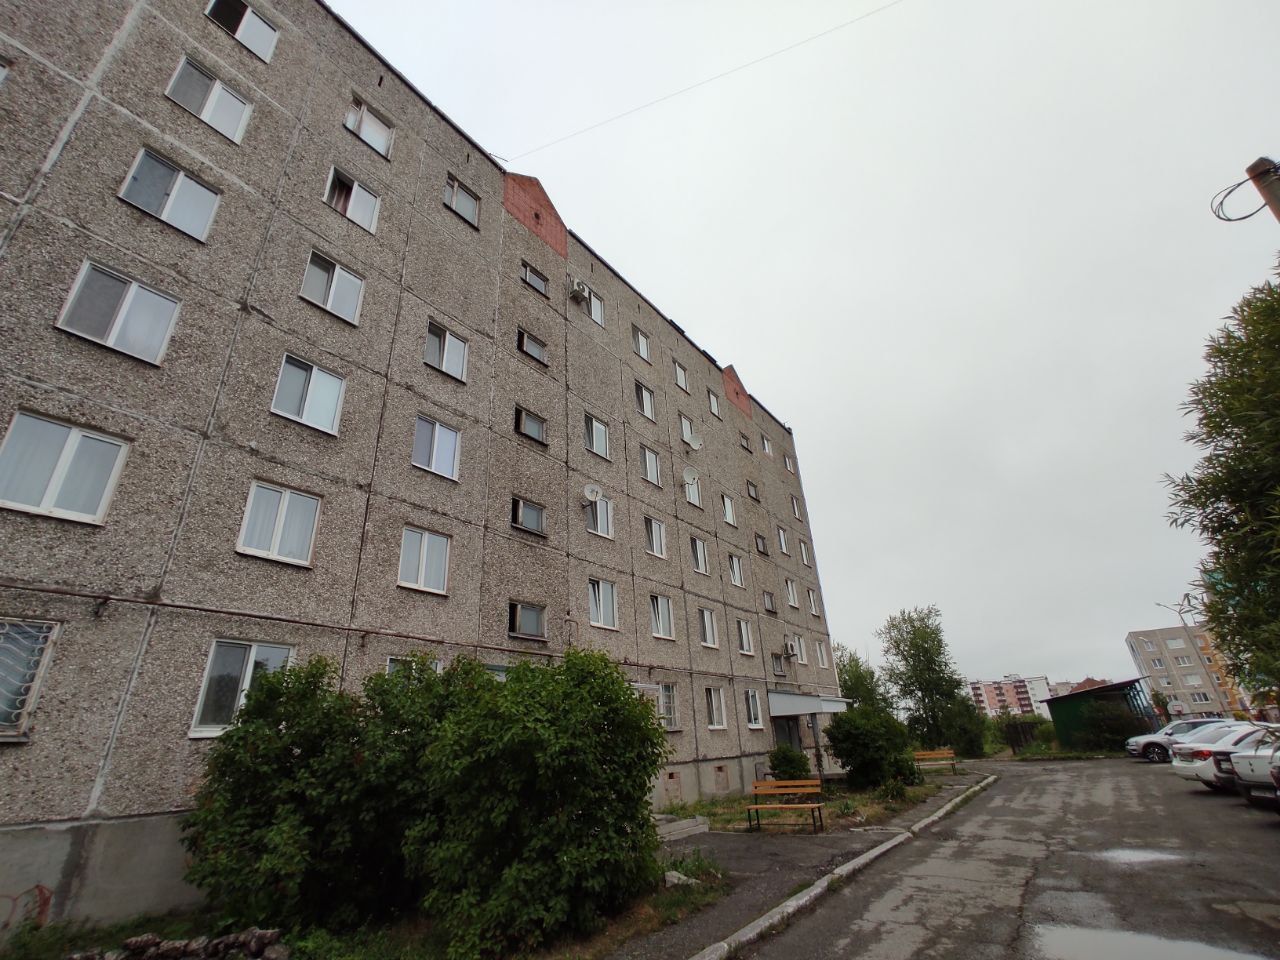 Мэрия Серова утвердила среднюю стоимость квадратного метра жилья на четвертый квартал